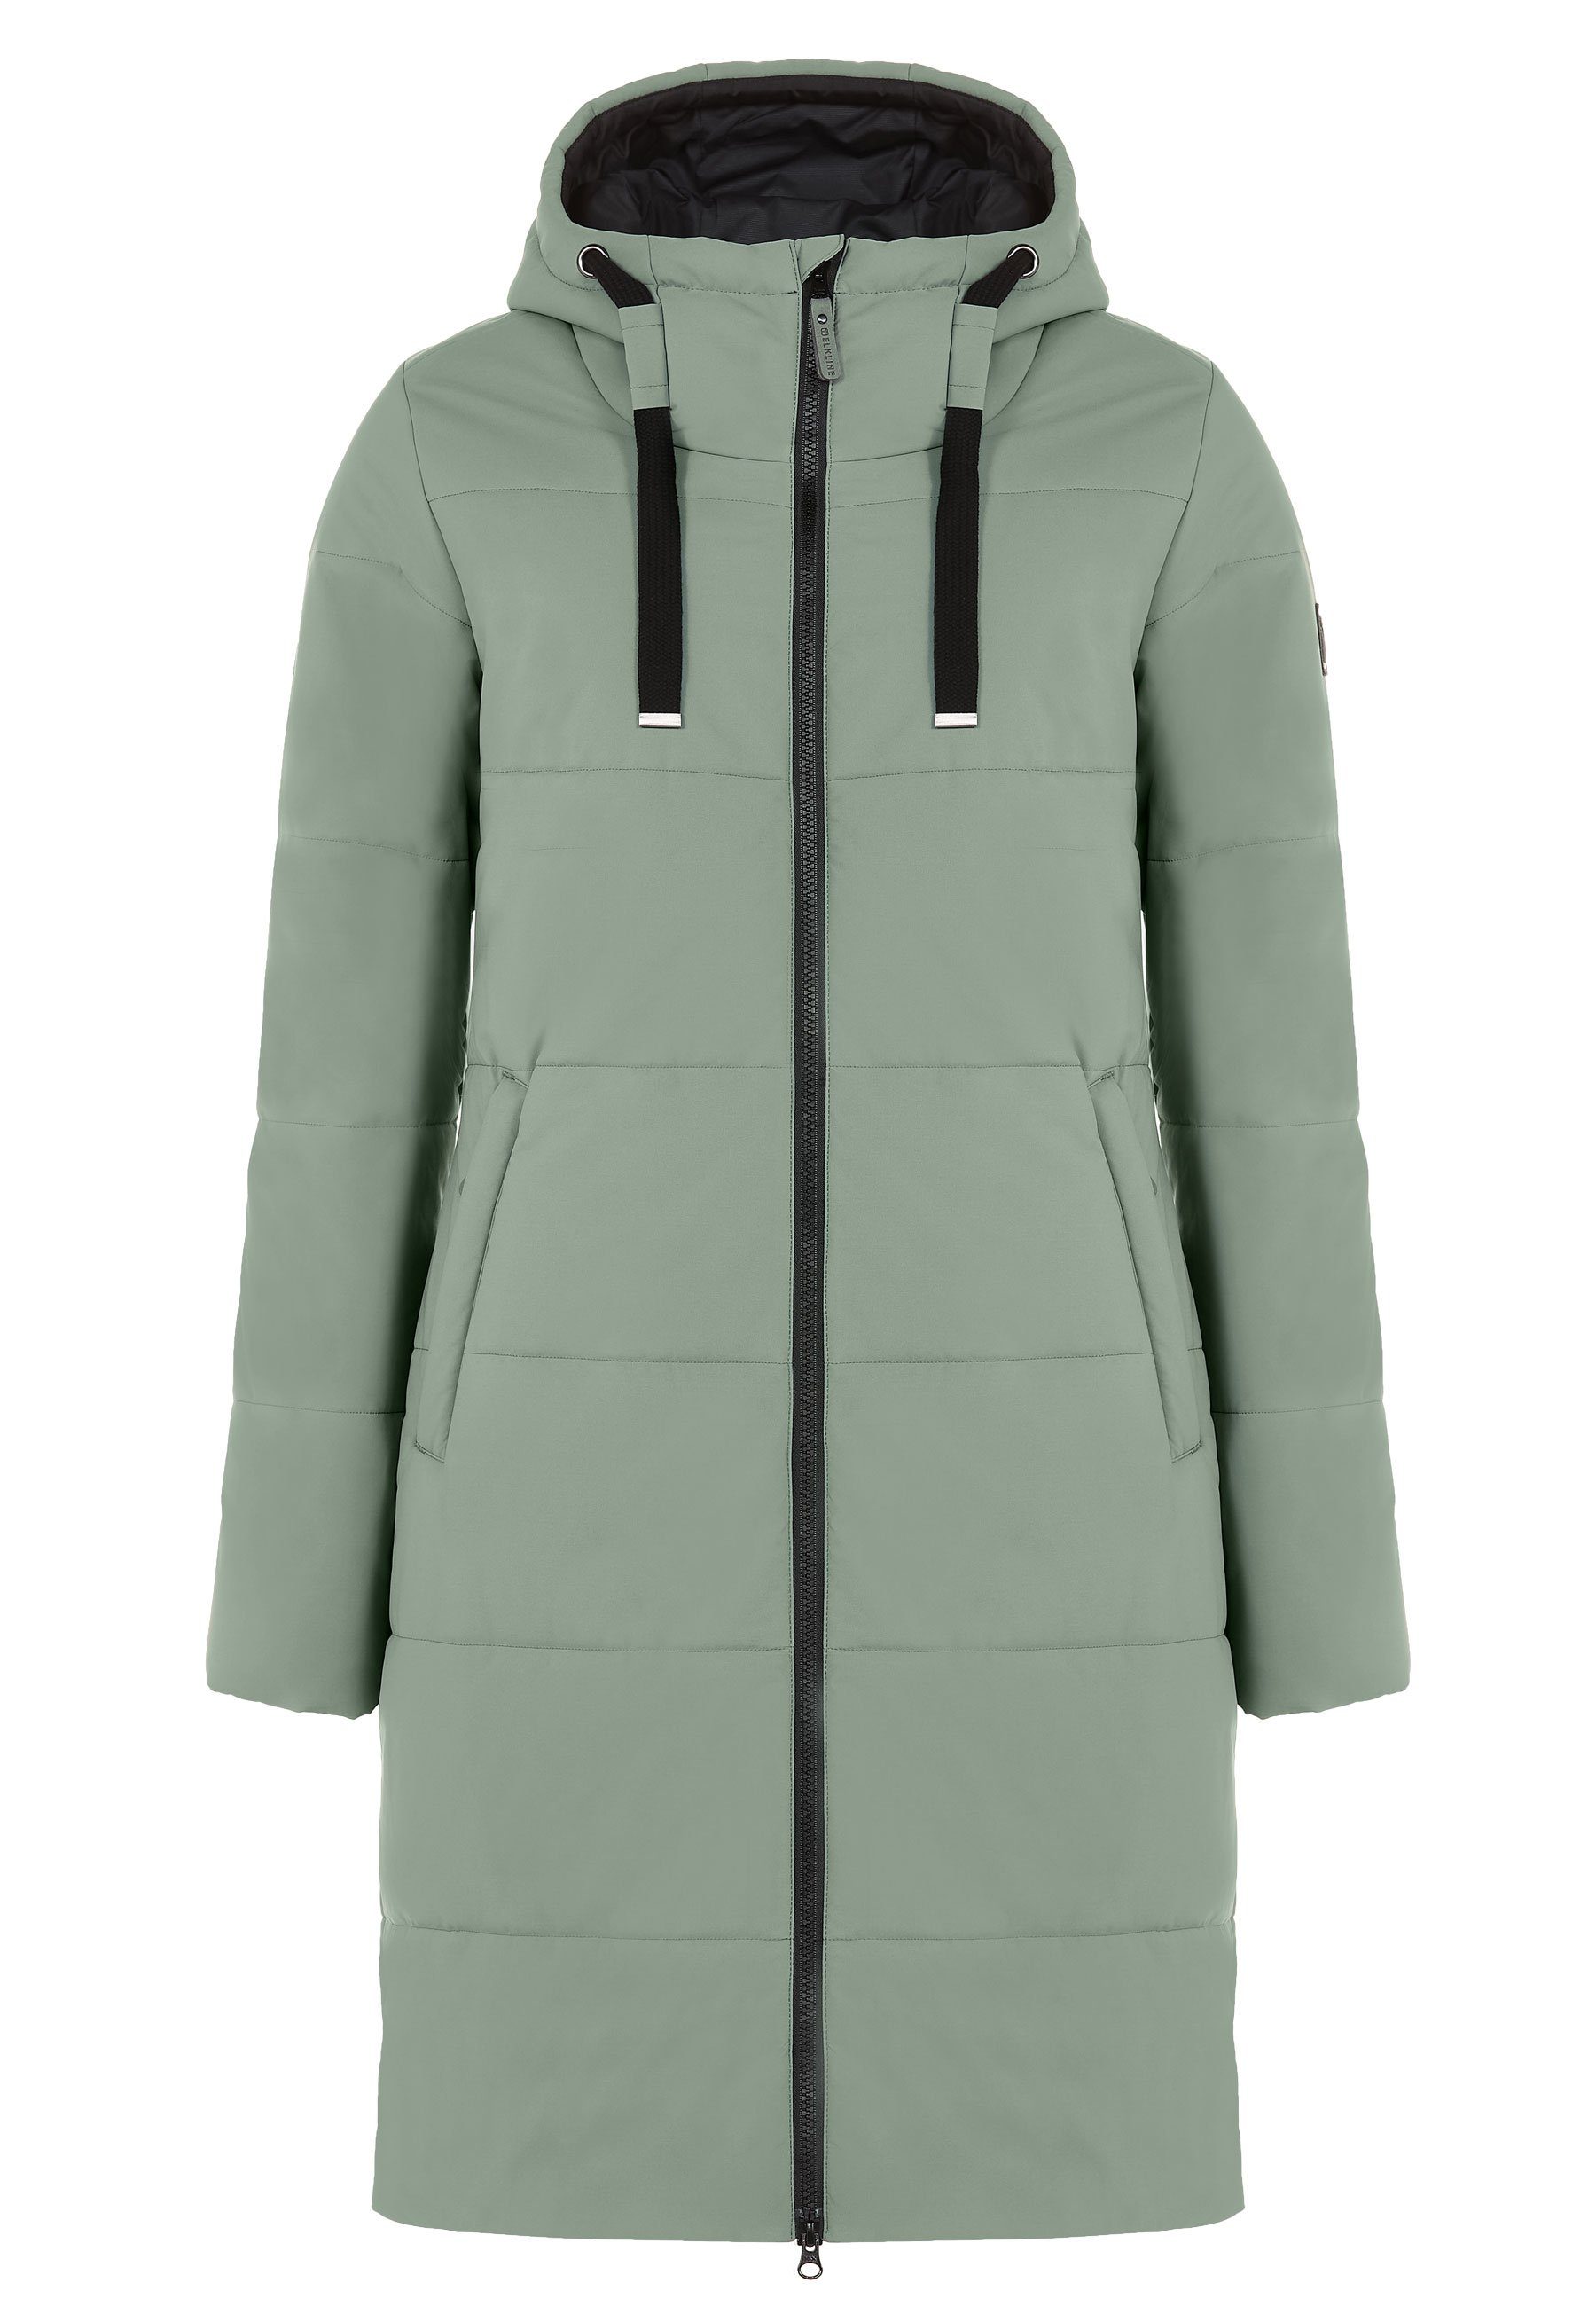 leichter 2-Wege-Reißverschluss soft Comfort Winterjacke langer Mantel, Elkline olive